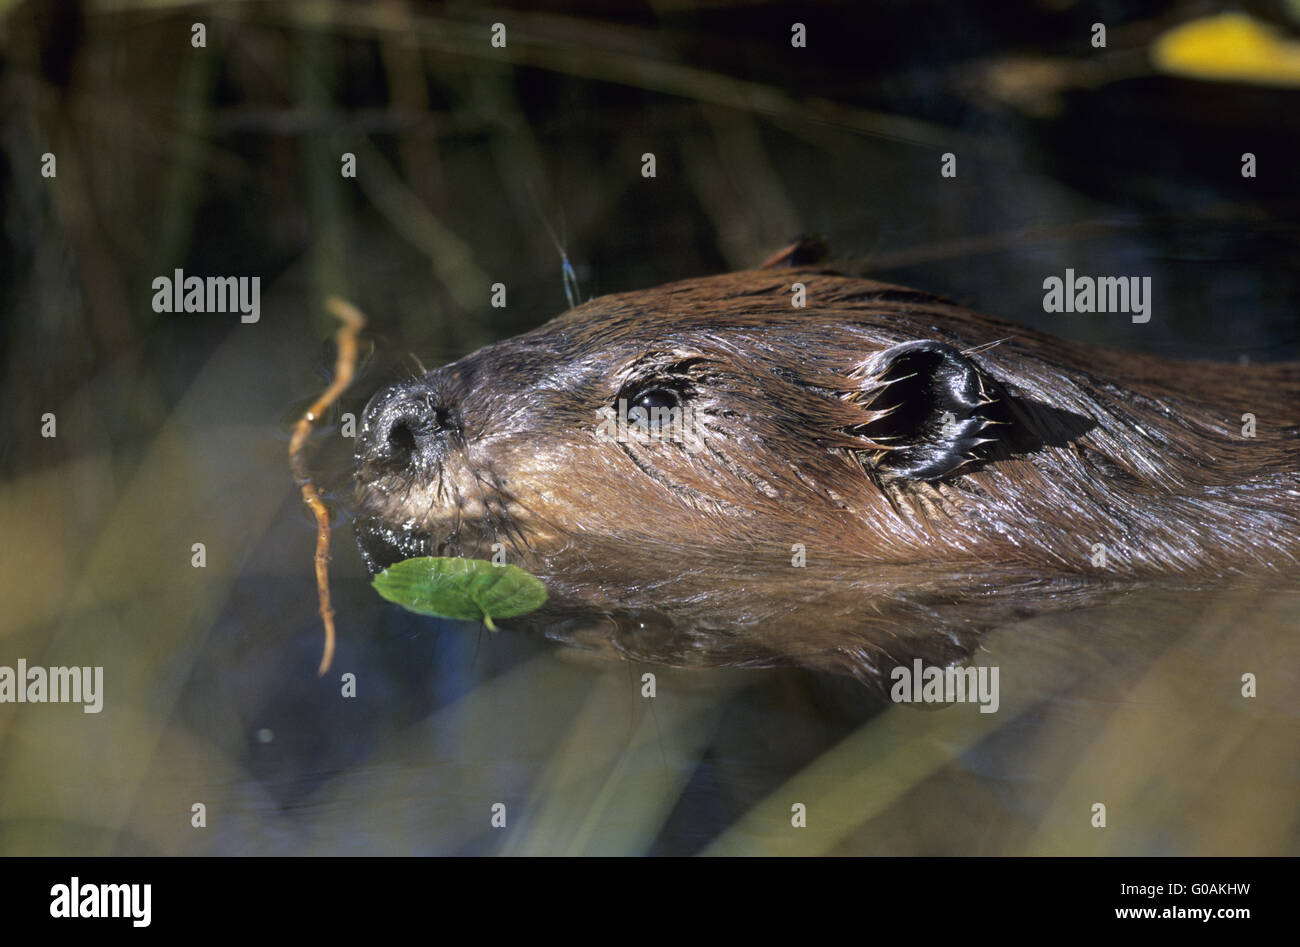 North American Beaver observing alert at pondside Stock Photo